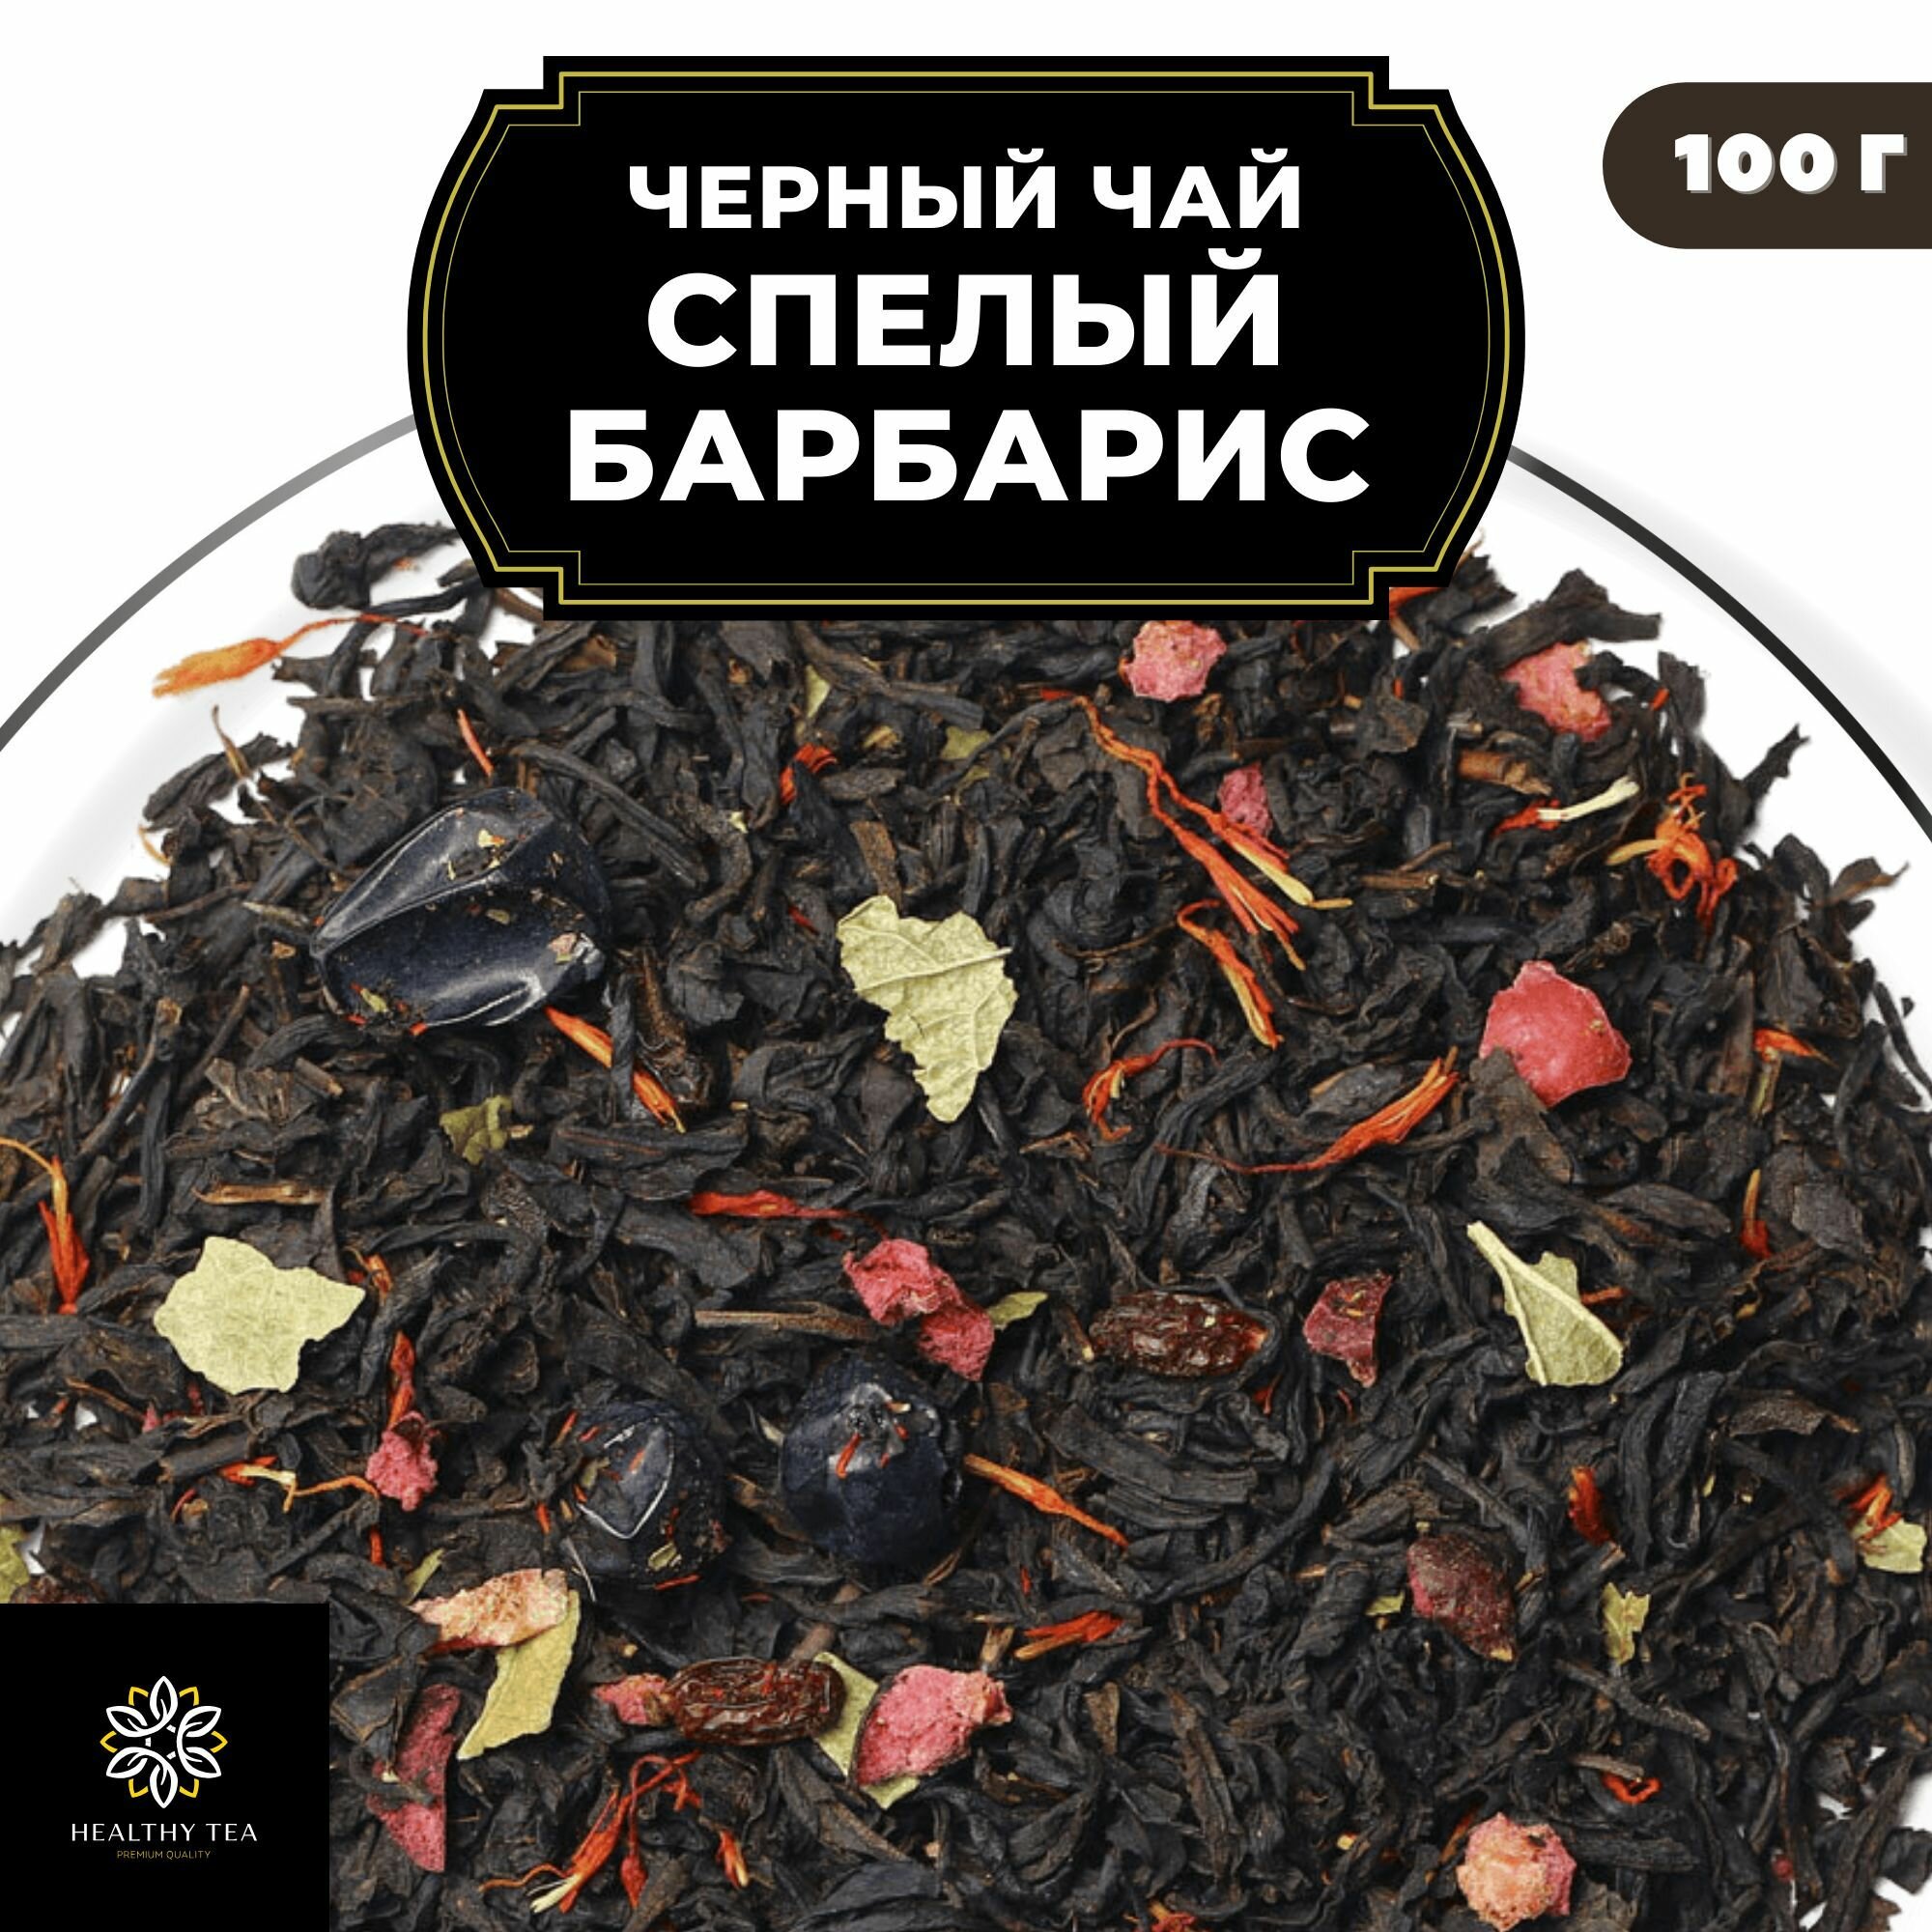 Индийский Черный чай с барбарисом, клюквой и смородиной "Спелый барбарис" Полезный чай / HEALTHY TEA, 100 гр